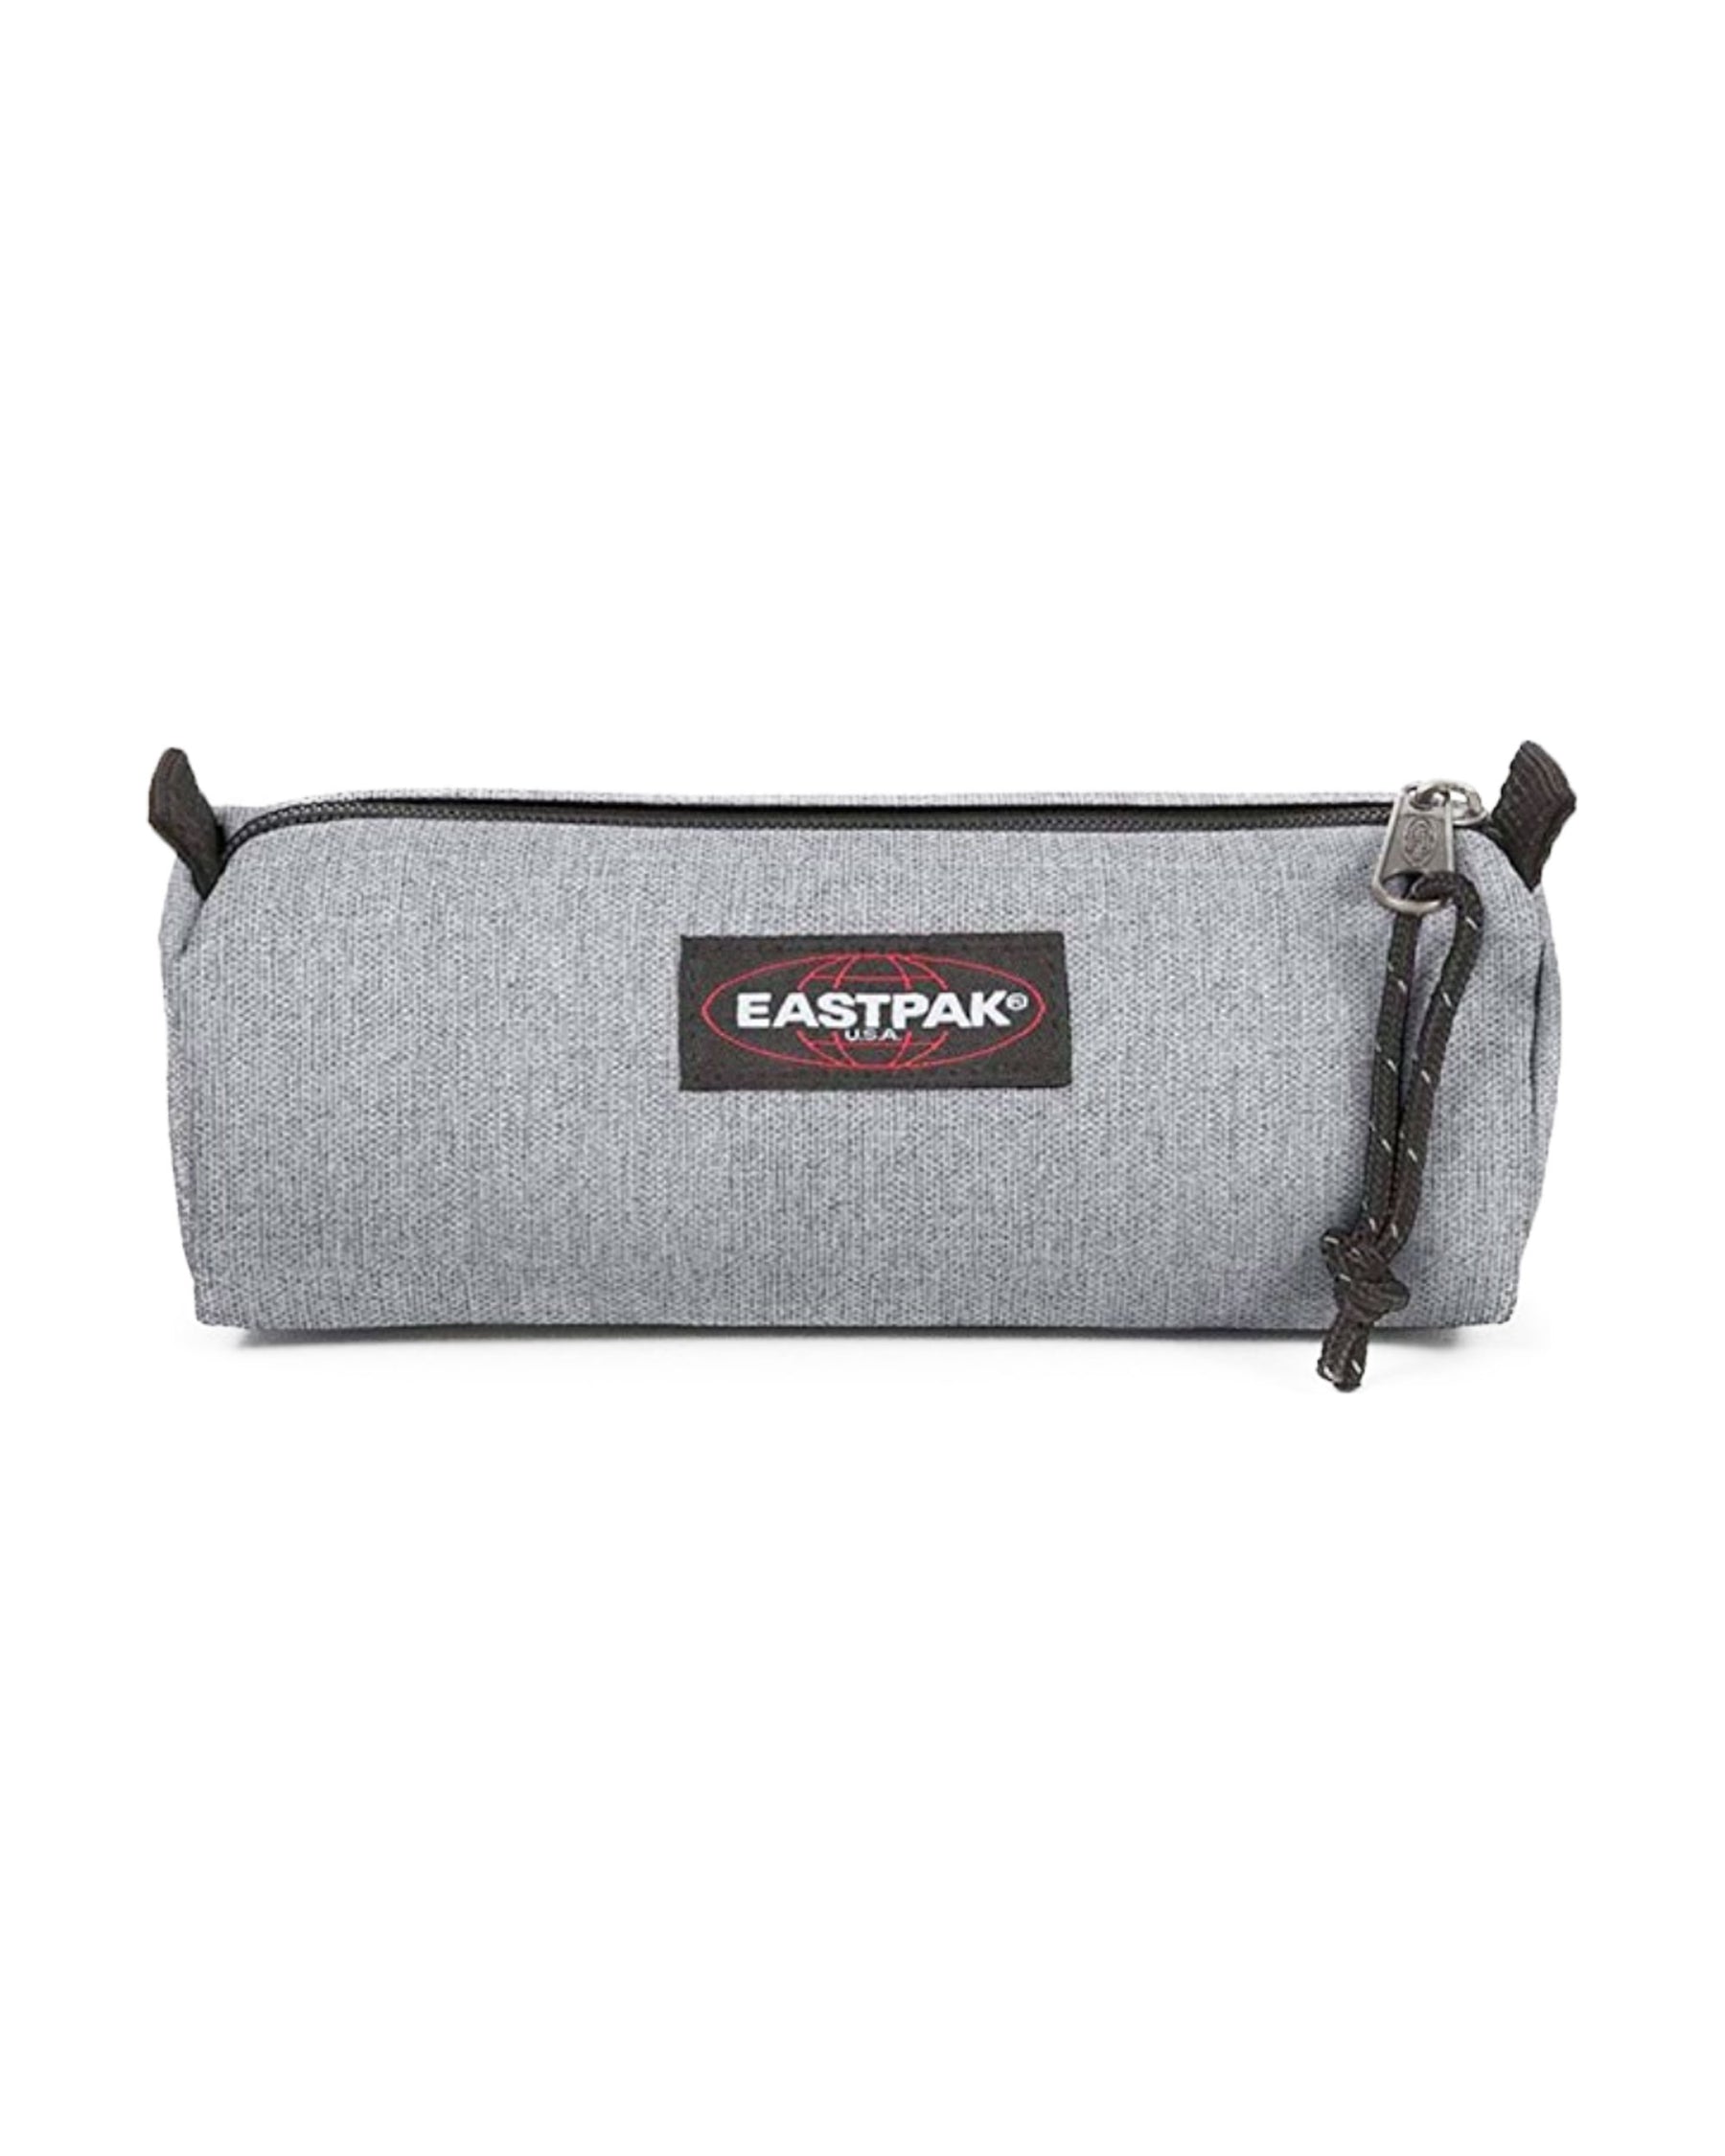 Eastpak Benchmark Grey